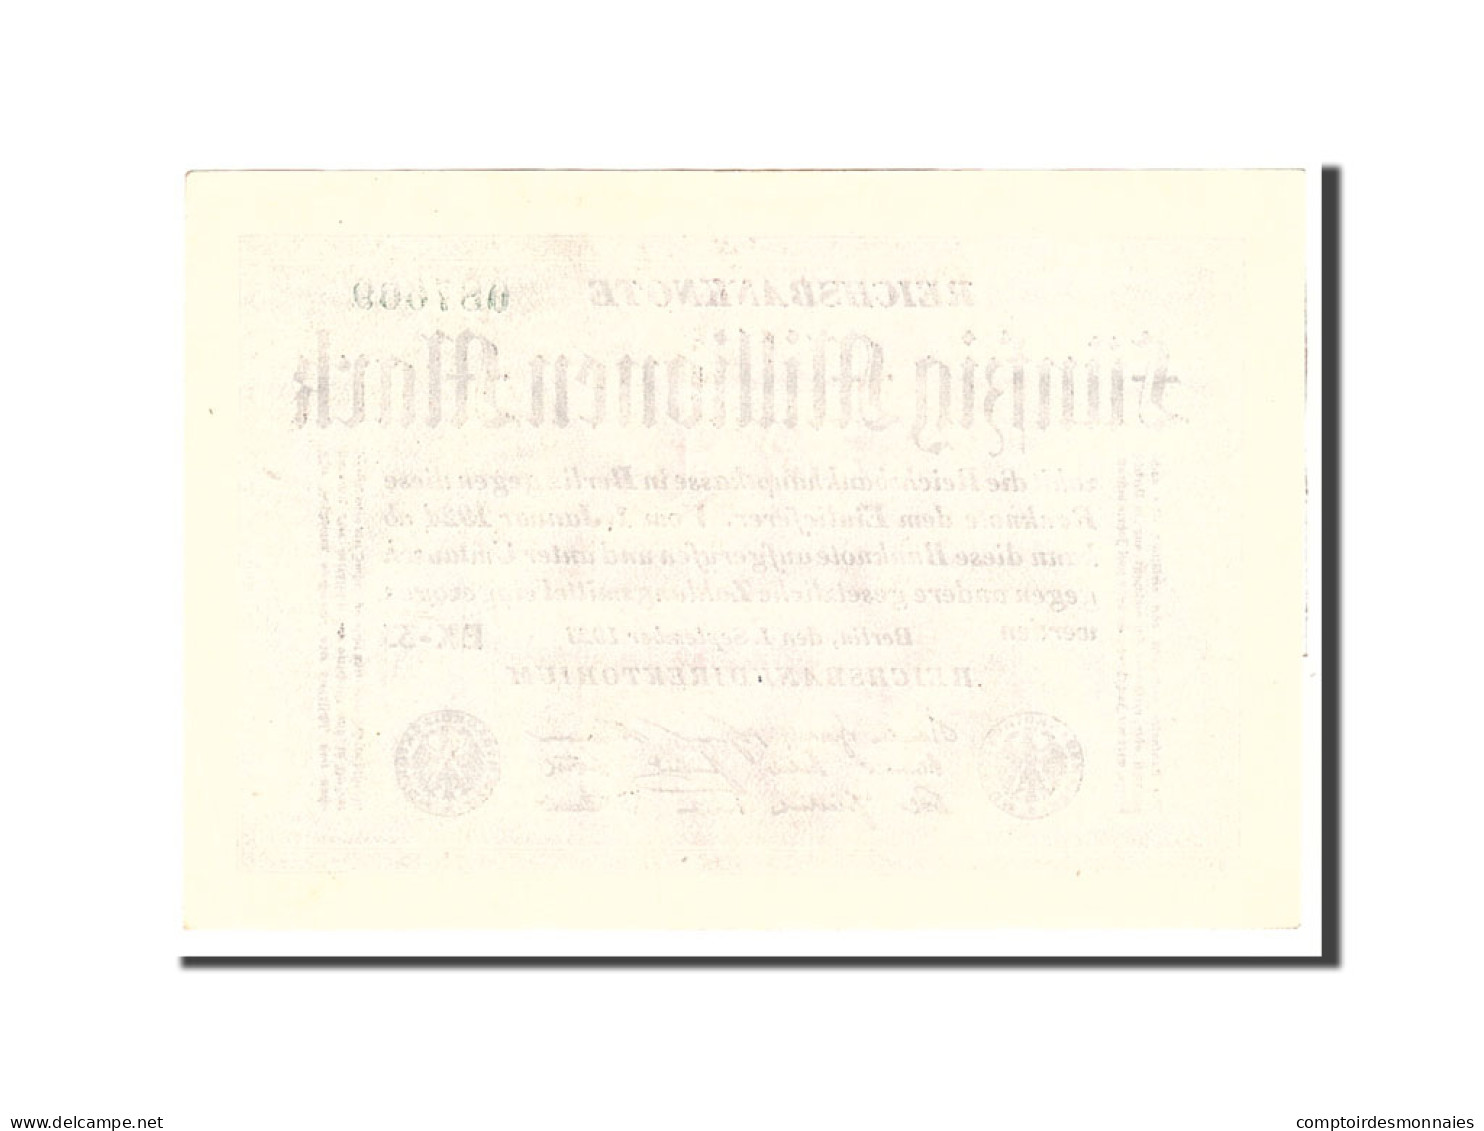 Billet, Allemagne, 50 Millionen Mark, 1923, 1923-09-01, KM:109b, SUP - 50 Millionen Mark